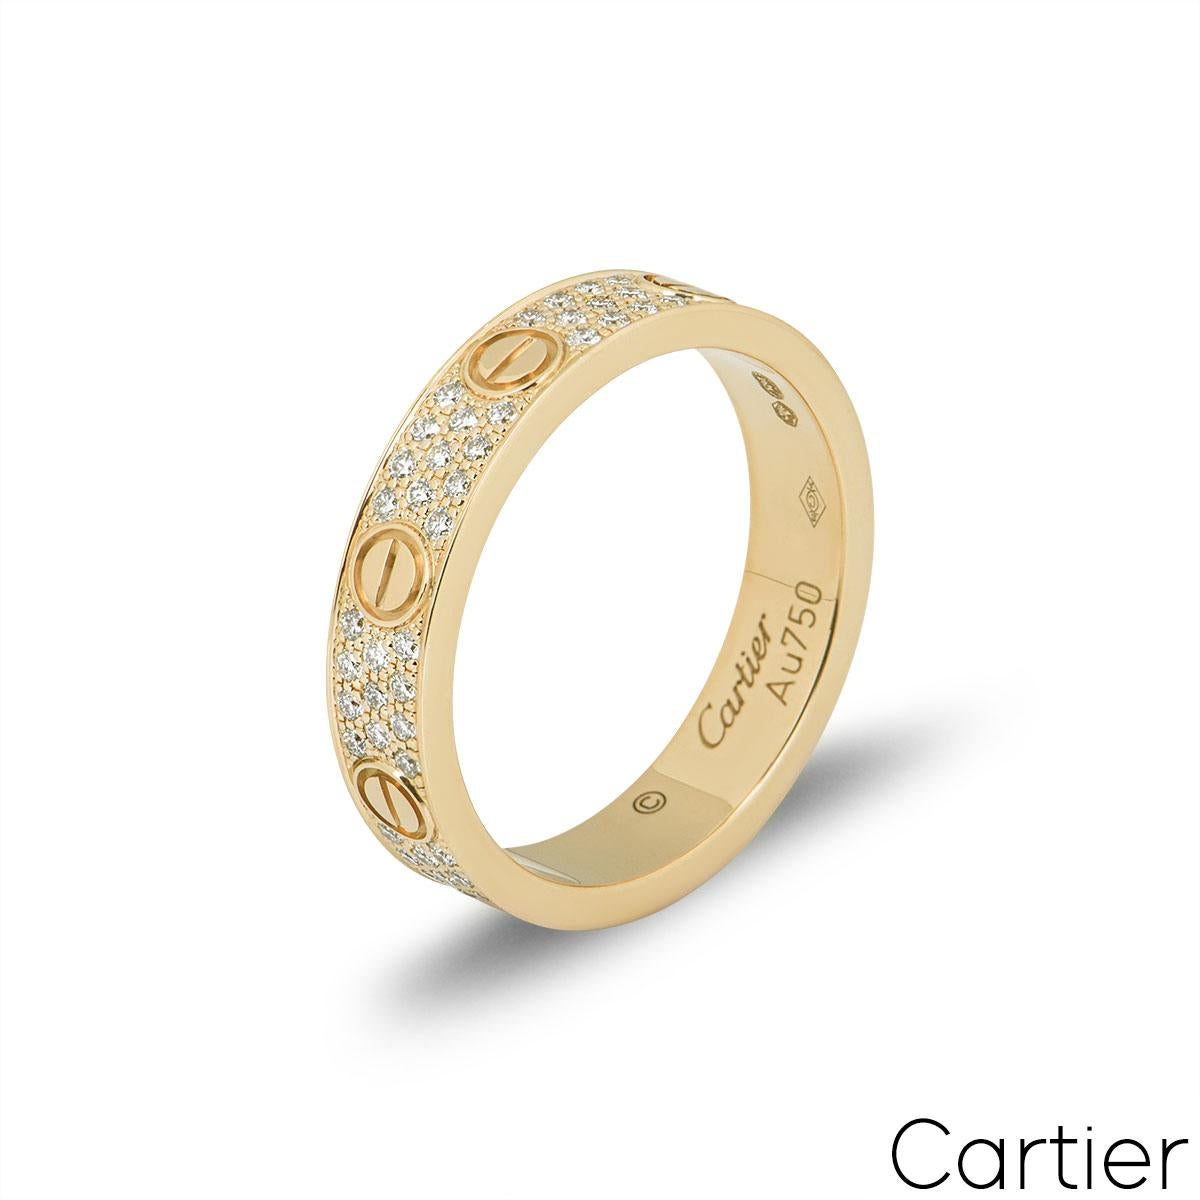 Ehering aus 18 Karat Gelbgold mit Diamanten von Cartier aus der Collection'S Love. Der Ring besteht aus den ikonischen Schraubenmotiven an den Außenkanten, zwischen denen 88 runde Diamanten im Brillantschliff mit einem Gesamtgewicht von 0,31 ct